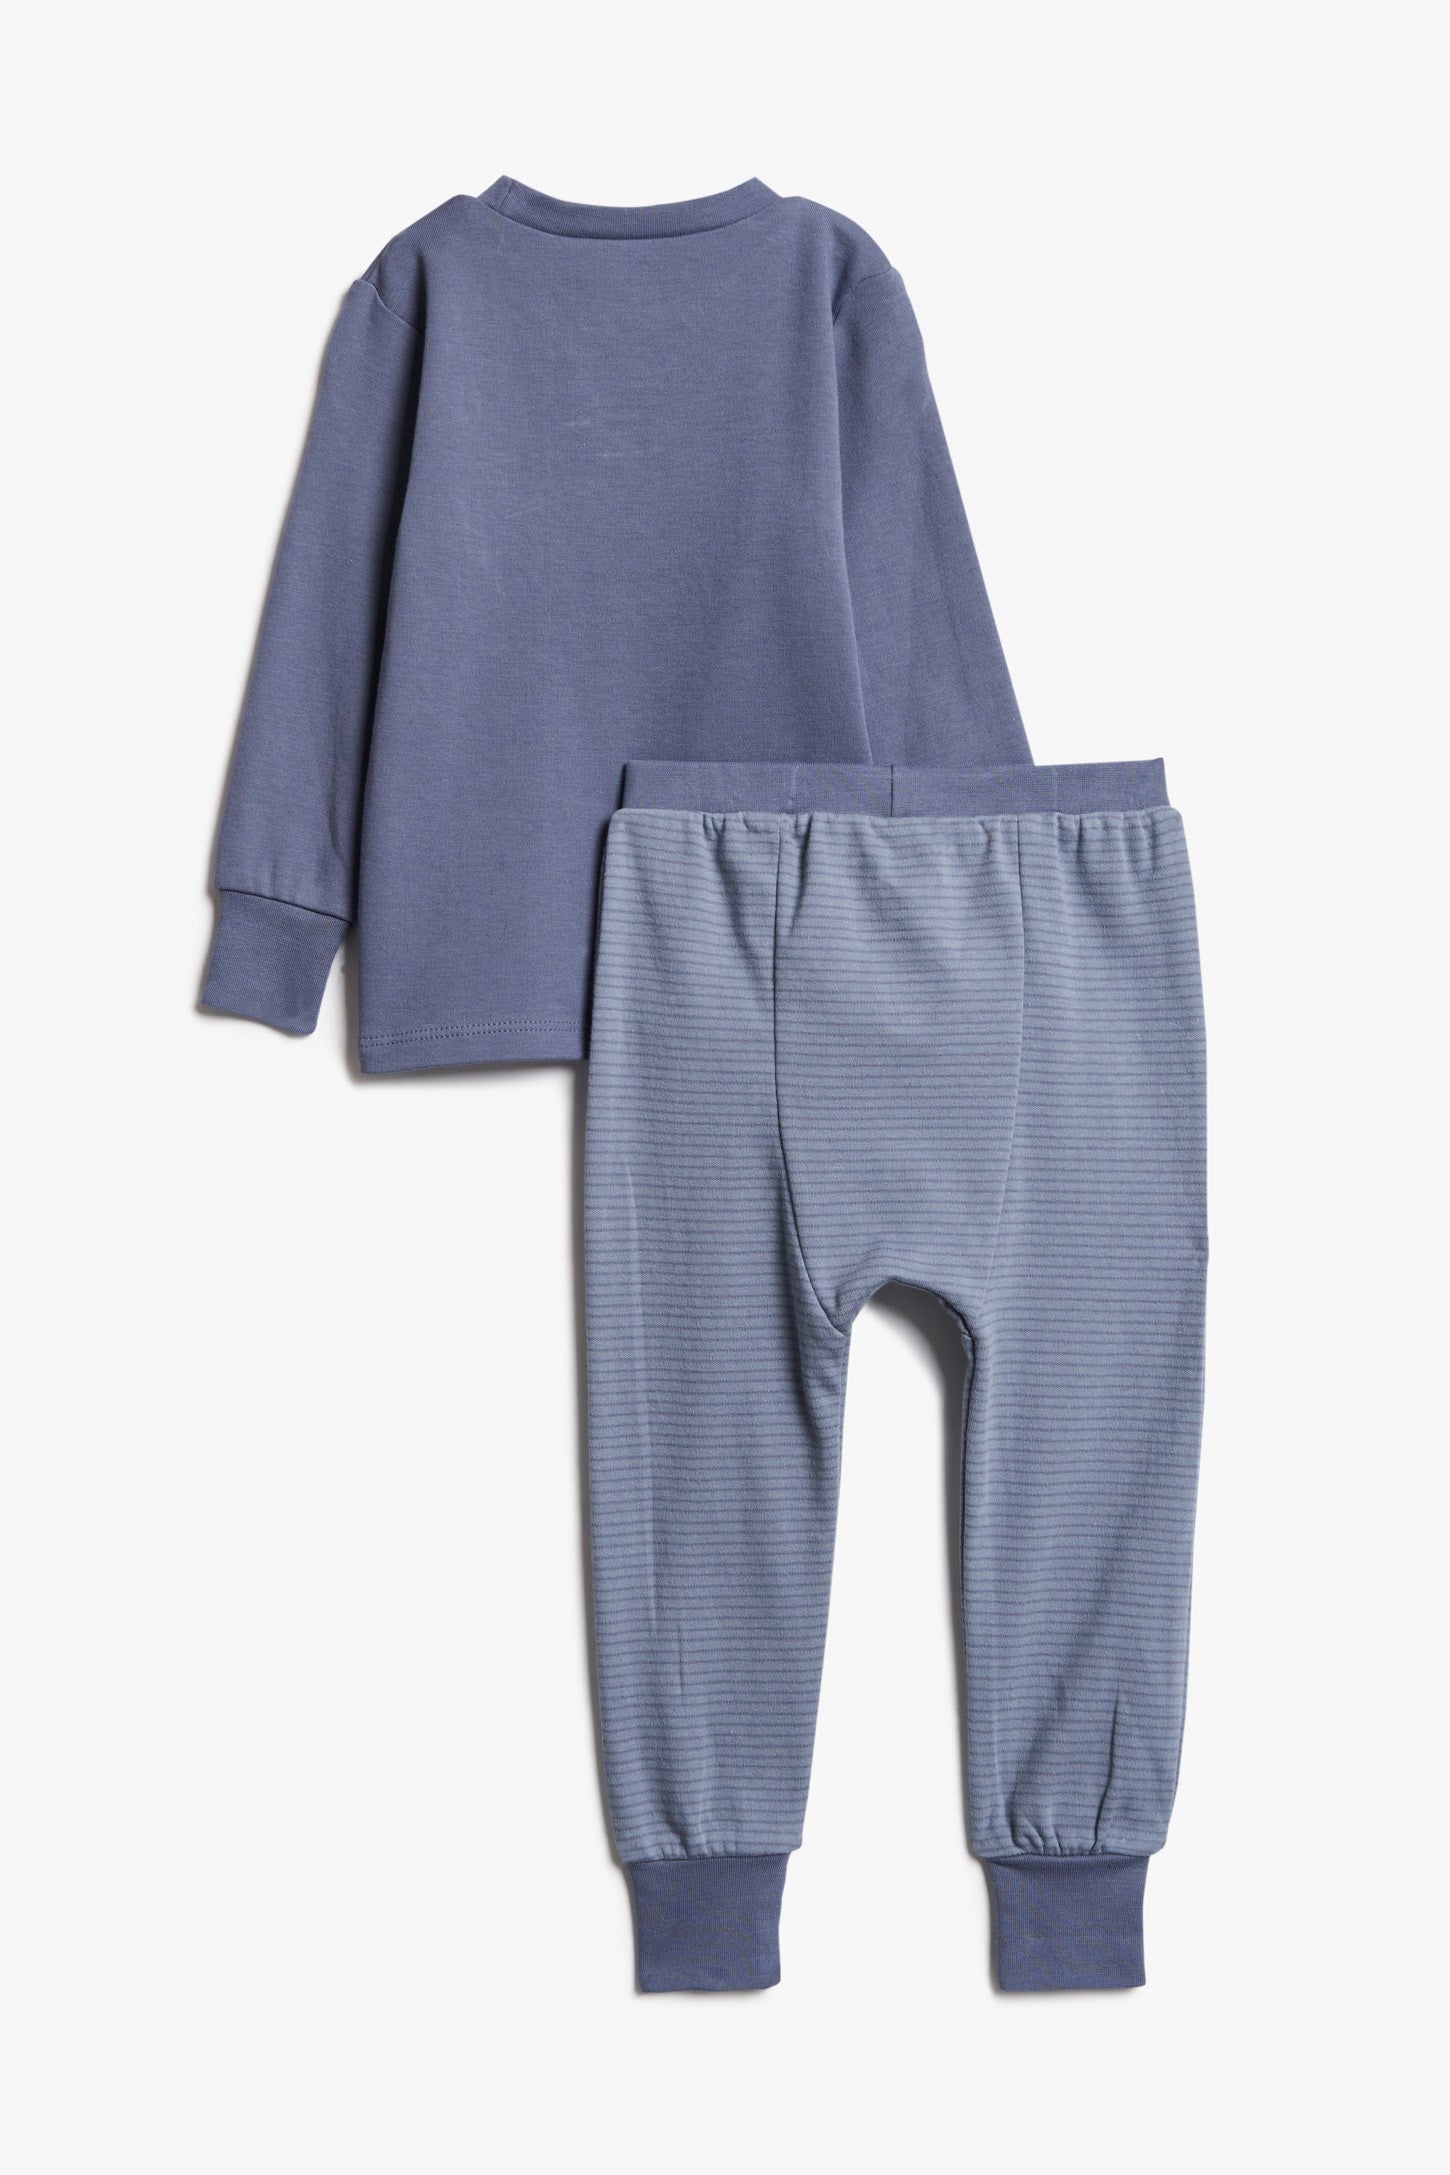 Pyjama 2-pièces imprimé, coton bio, 2/30$ - Bébé && BLEU